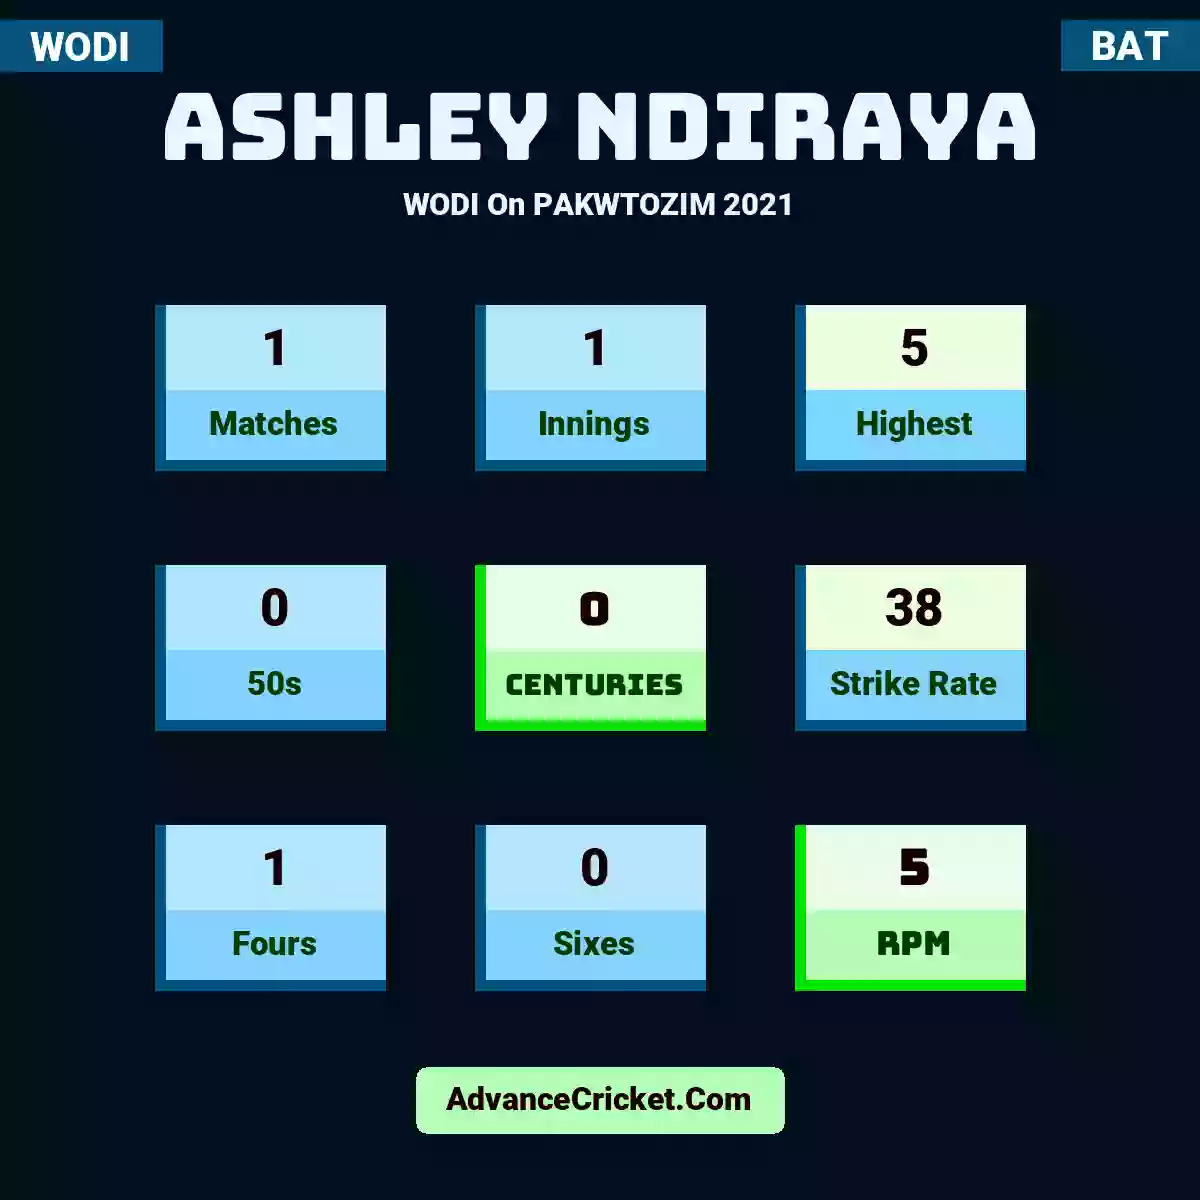 Ashley Ndiraya WODI  On PAKWTOZIM 2021, Ashley Ndiraya played 1 matches, scored 5 runs as highest, 0 half-centuries, and 0 centuries, with a strike rate of 38. A.Ndiraya hit 1 fours and 0 sixes, with an RPM of 5.